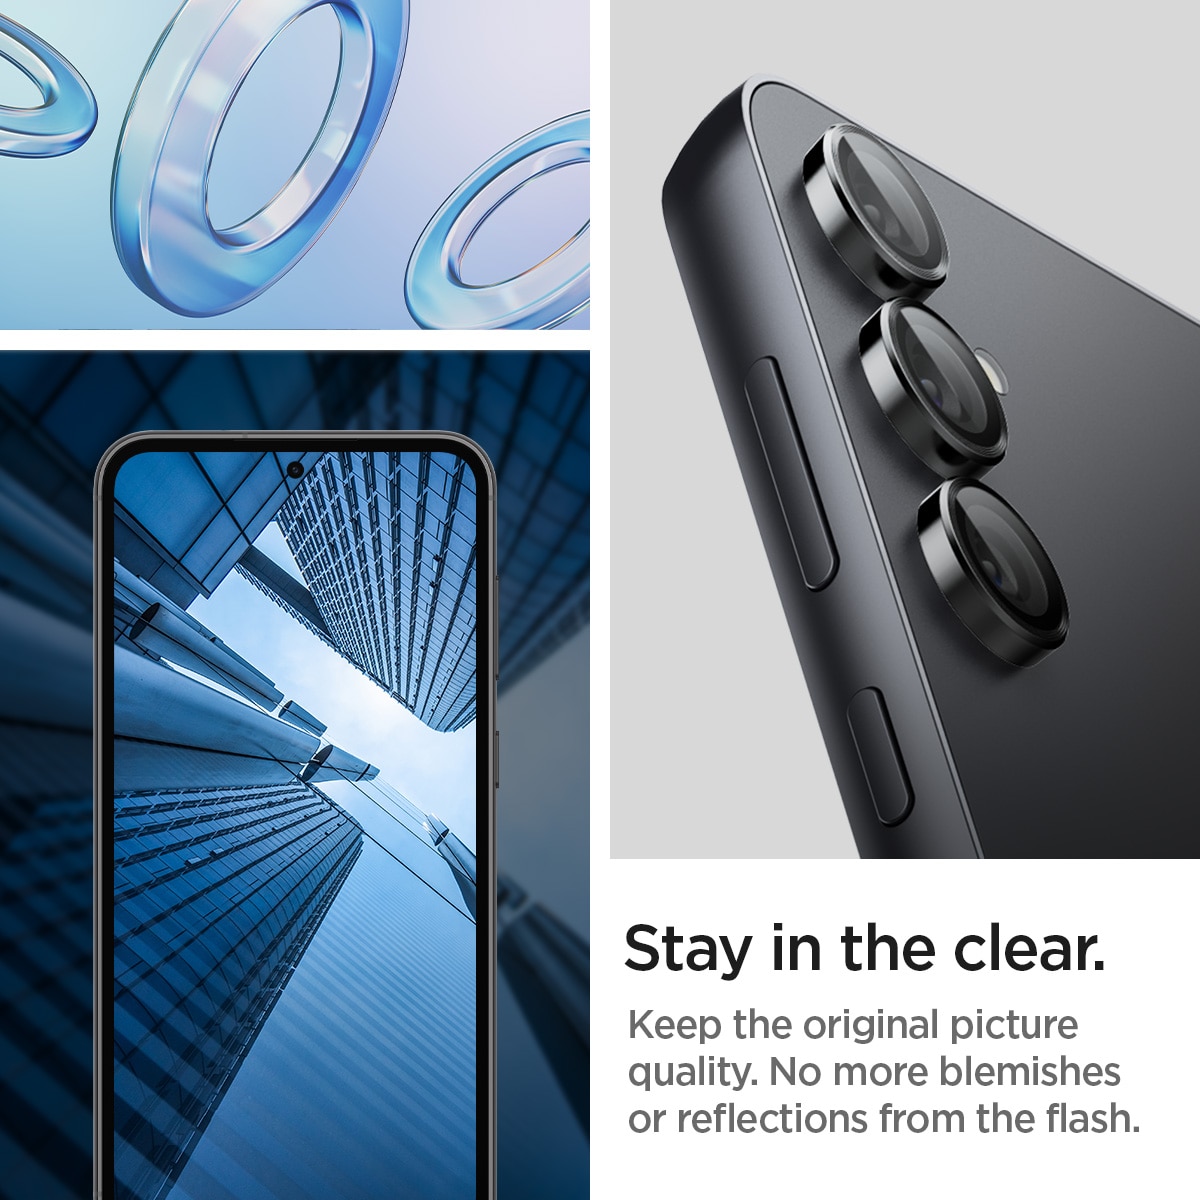 EZ Fit Optik Lens Protector Samsung Galaxy S23 FE (2 piezas) Black